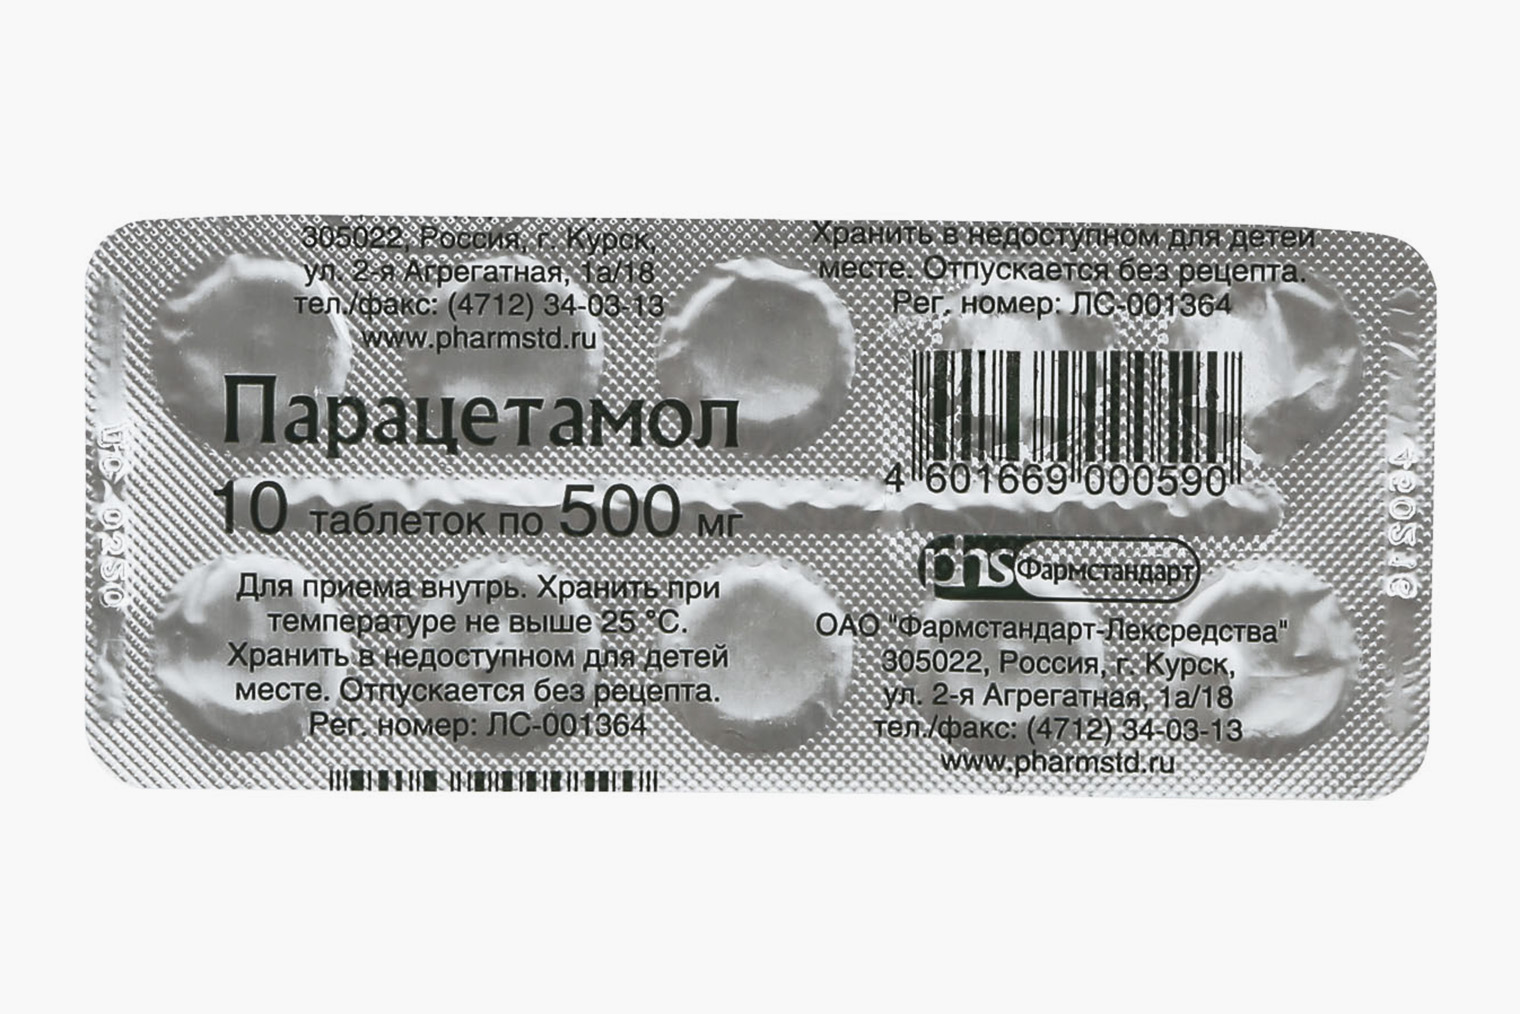 Парацетамол — одно из самых дешевых лекарств. Цена за 10 таблеток начинается от 6 ₽